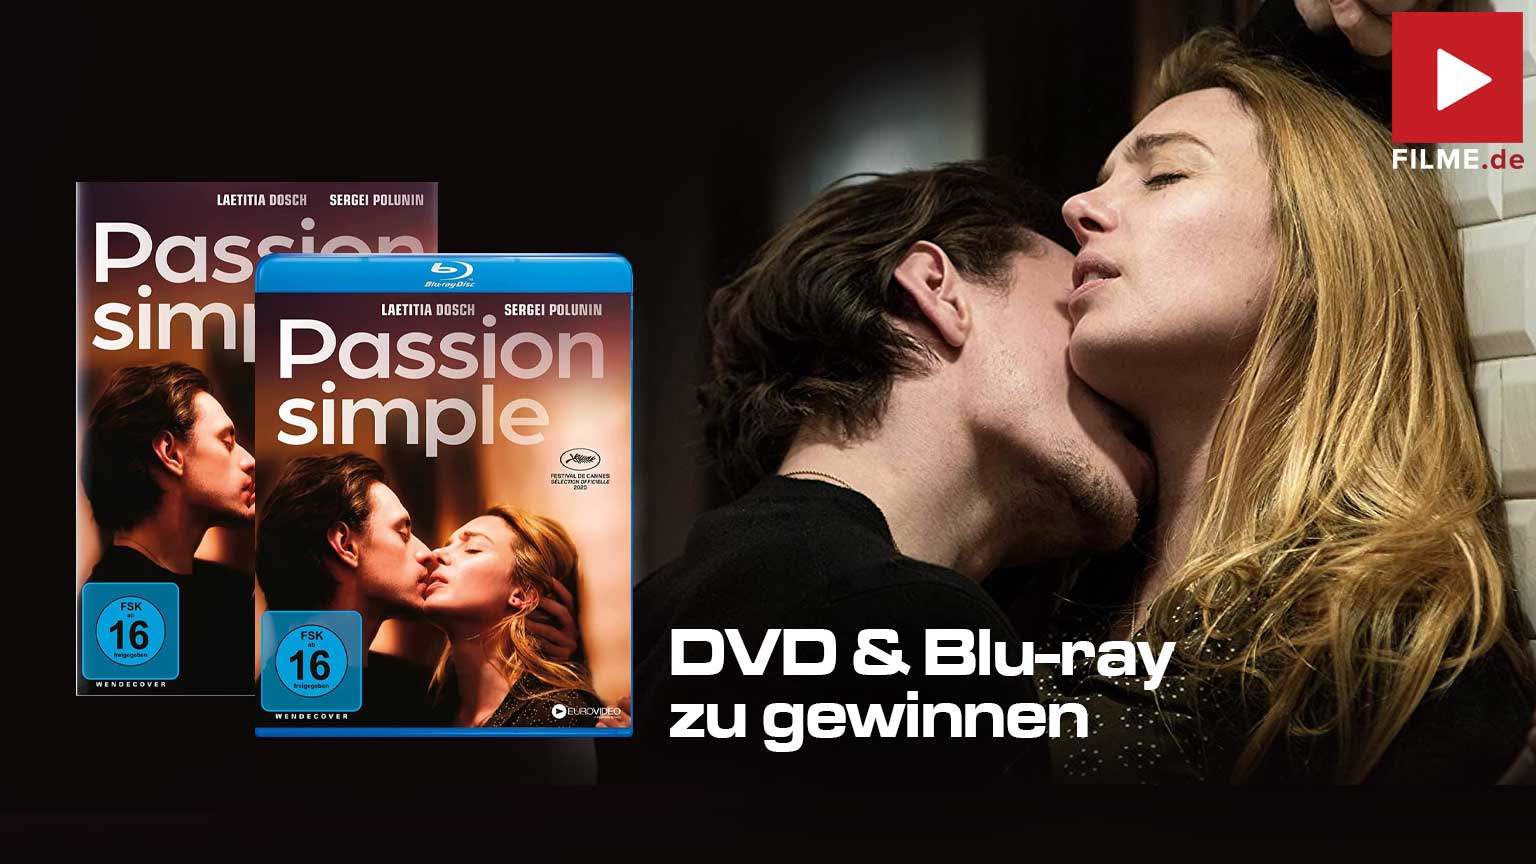 PASSION SIMPLE Film 2022 Blu-ray DVD Gewinnspiel gewinnen Artikelbild